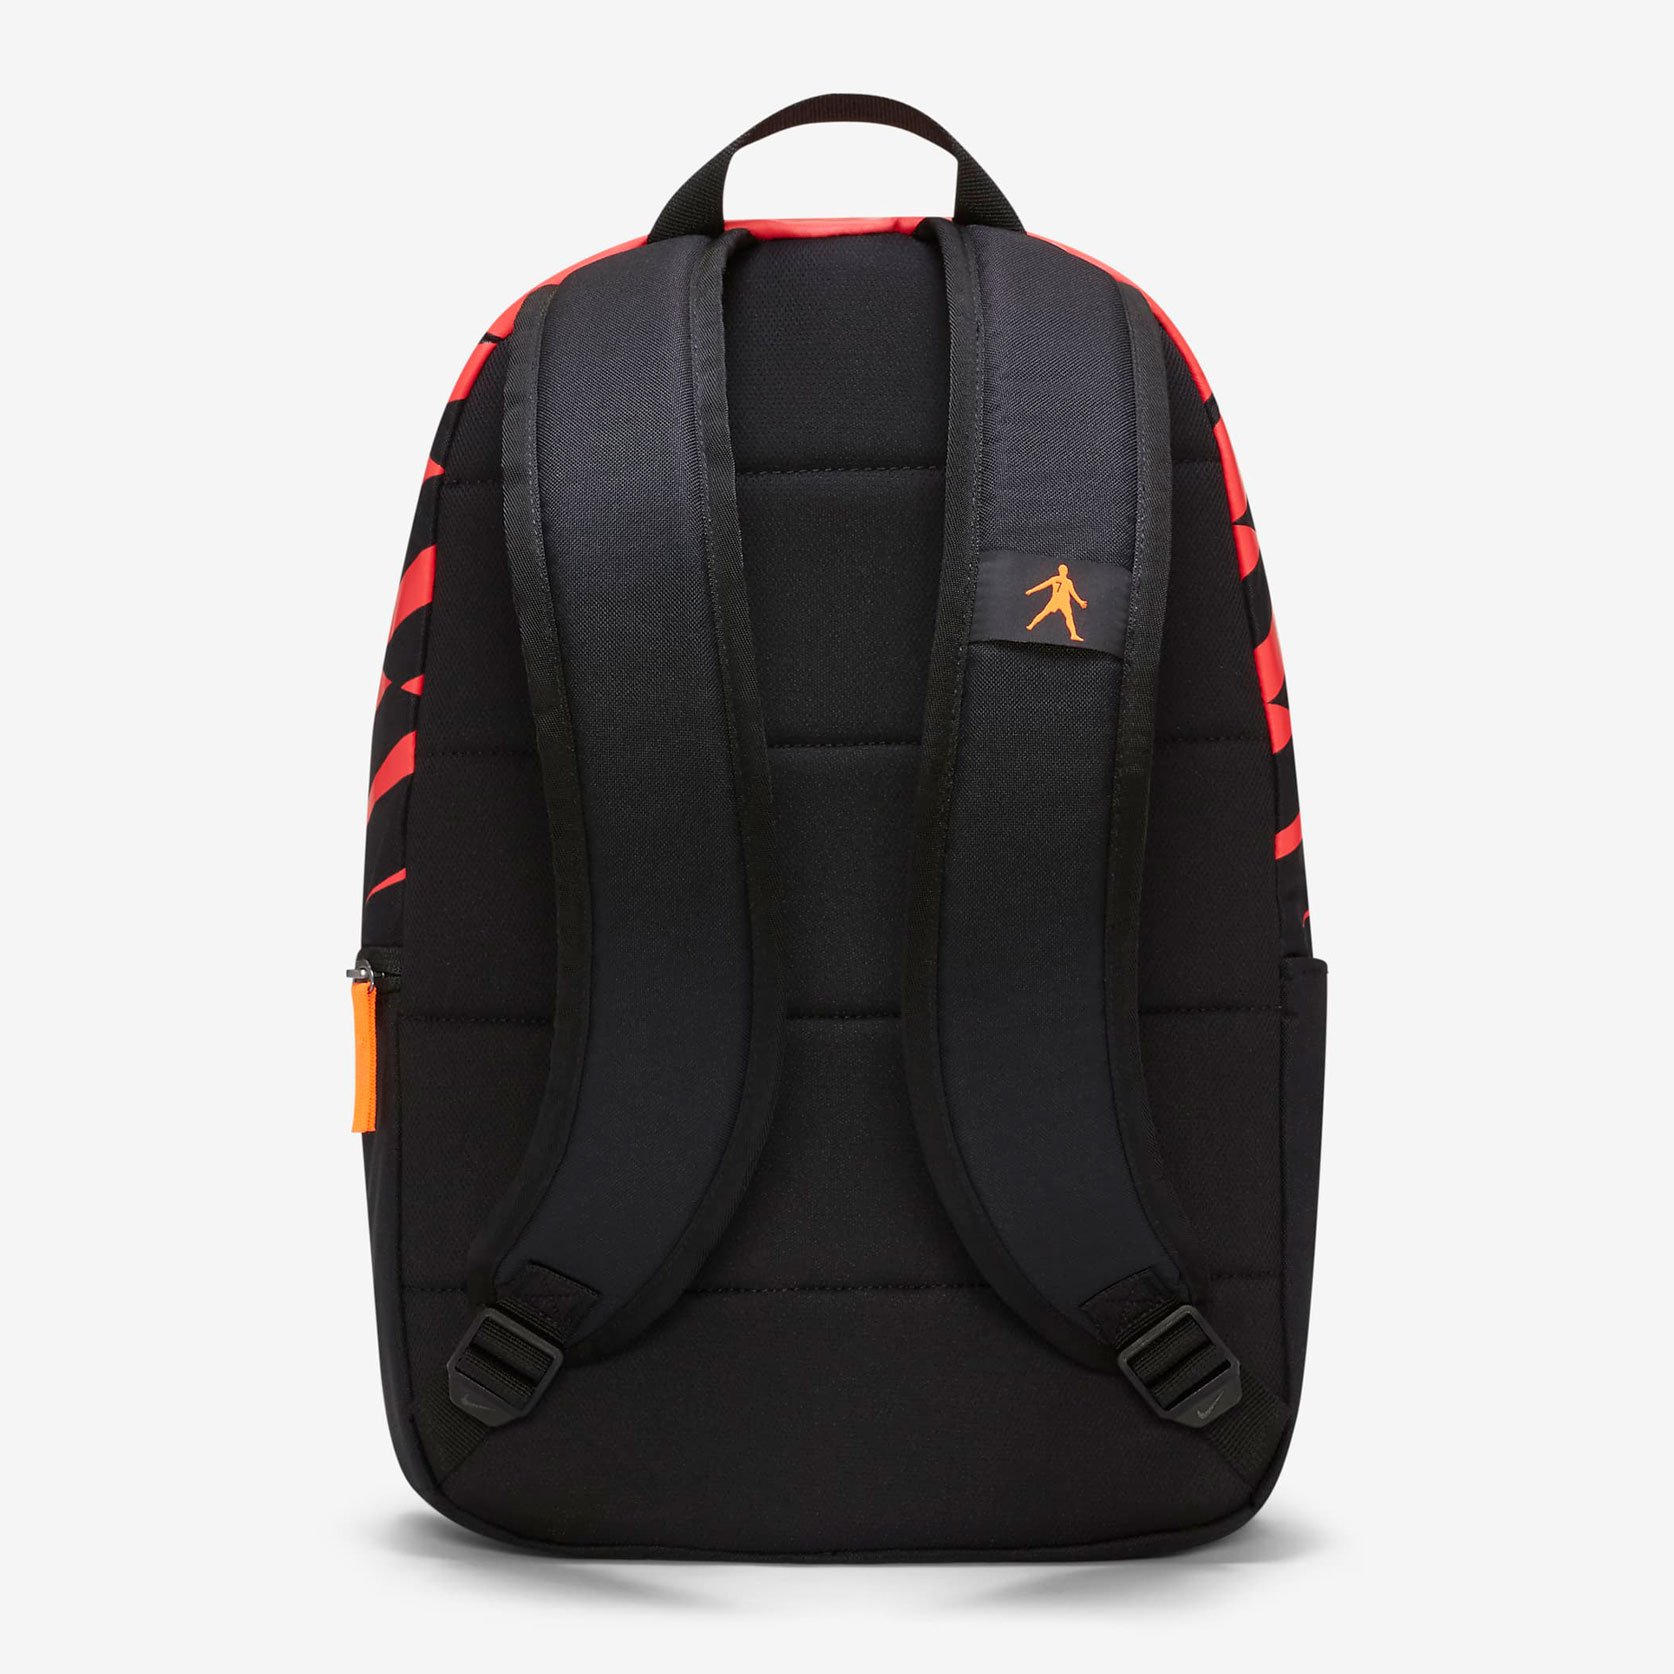 Рюкзак Nike CR7 Backpack